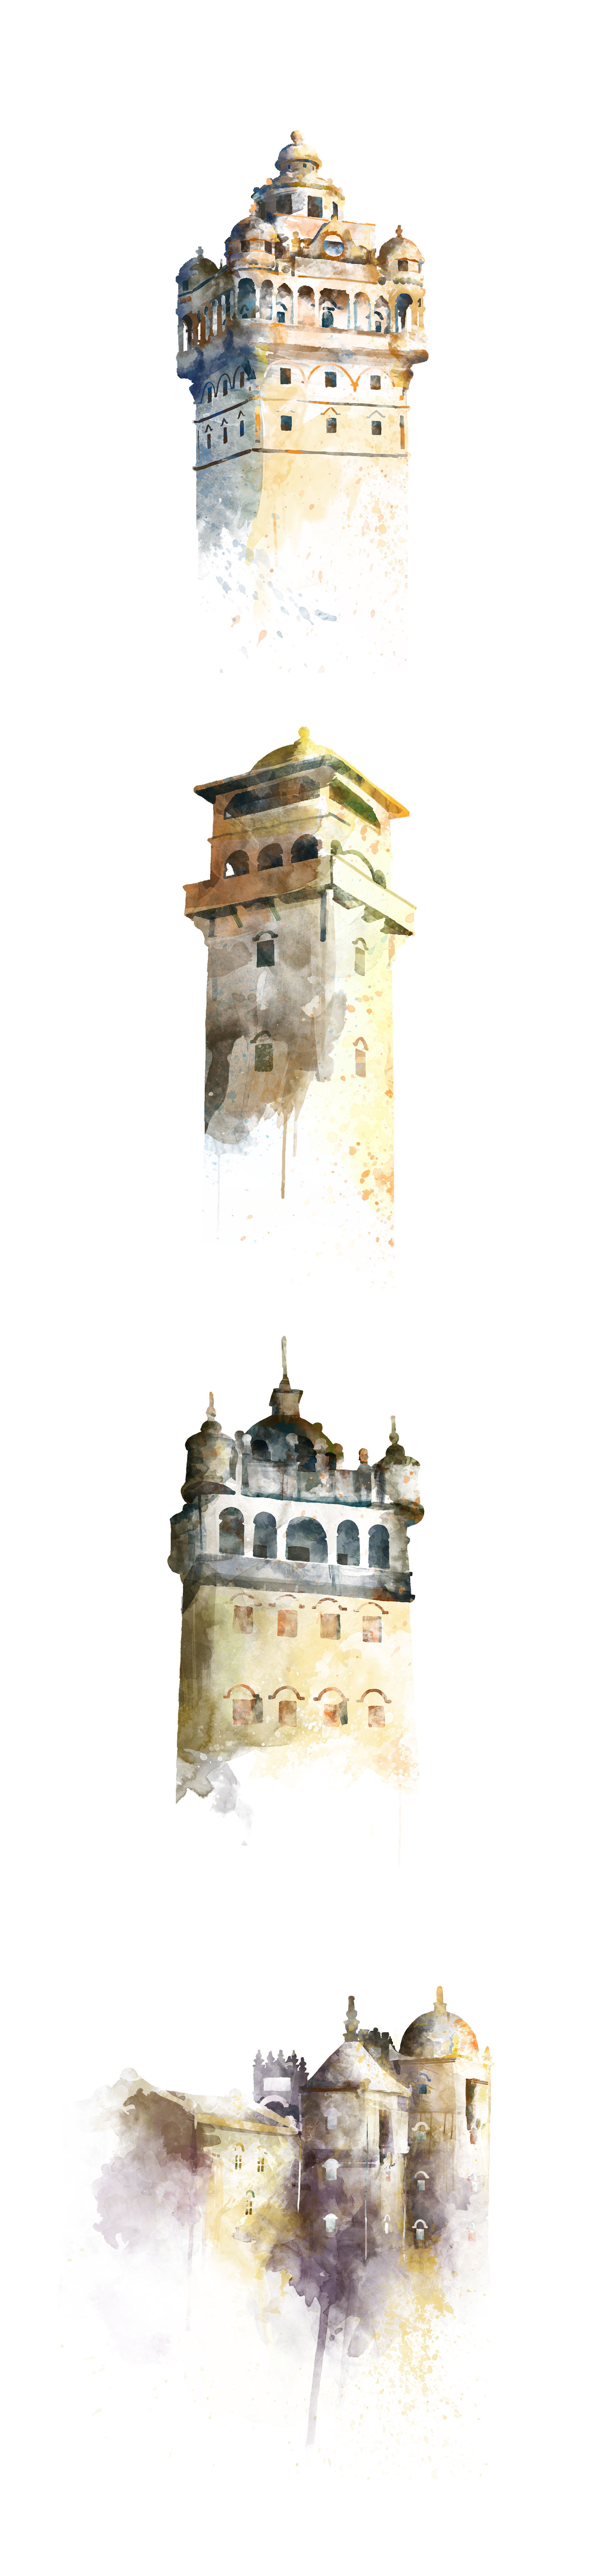 碉楼元素绘画图片